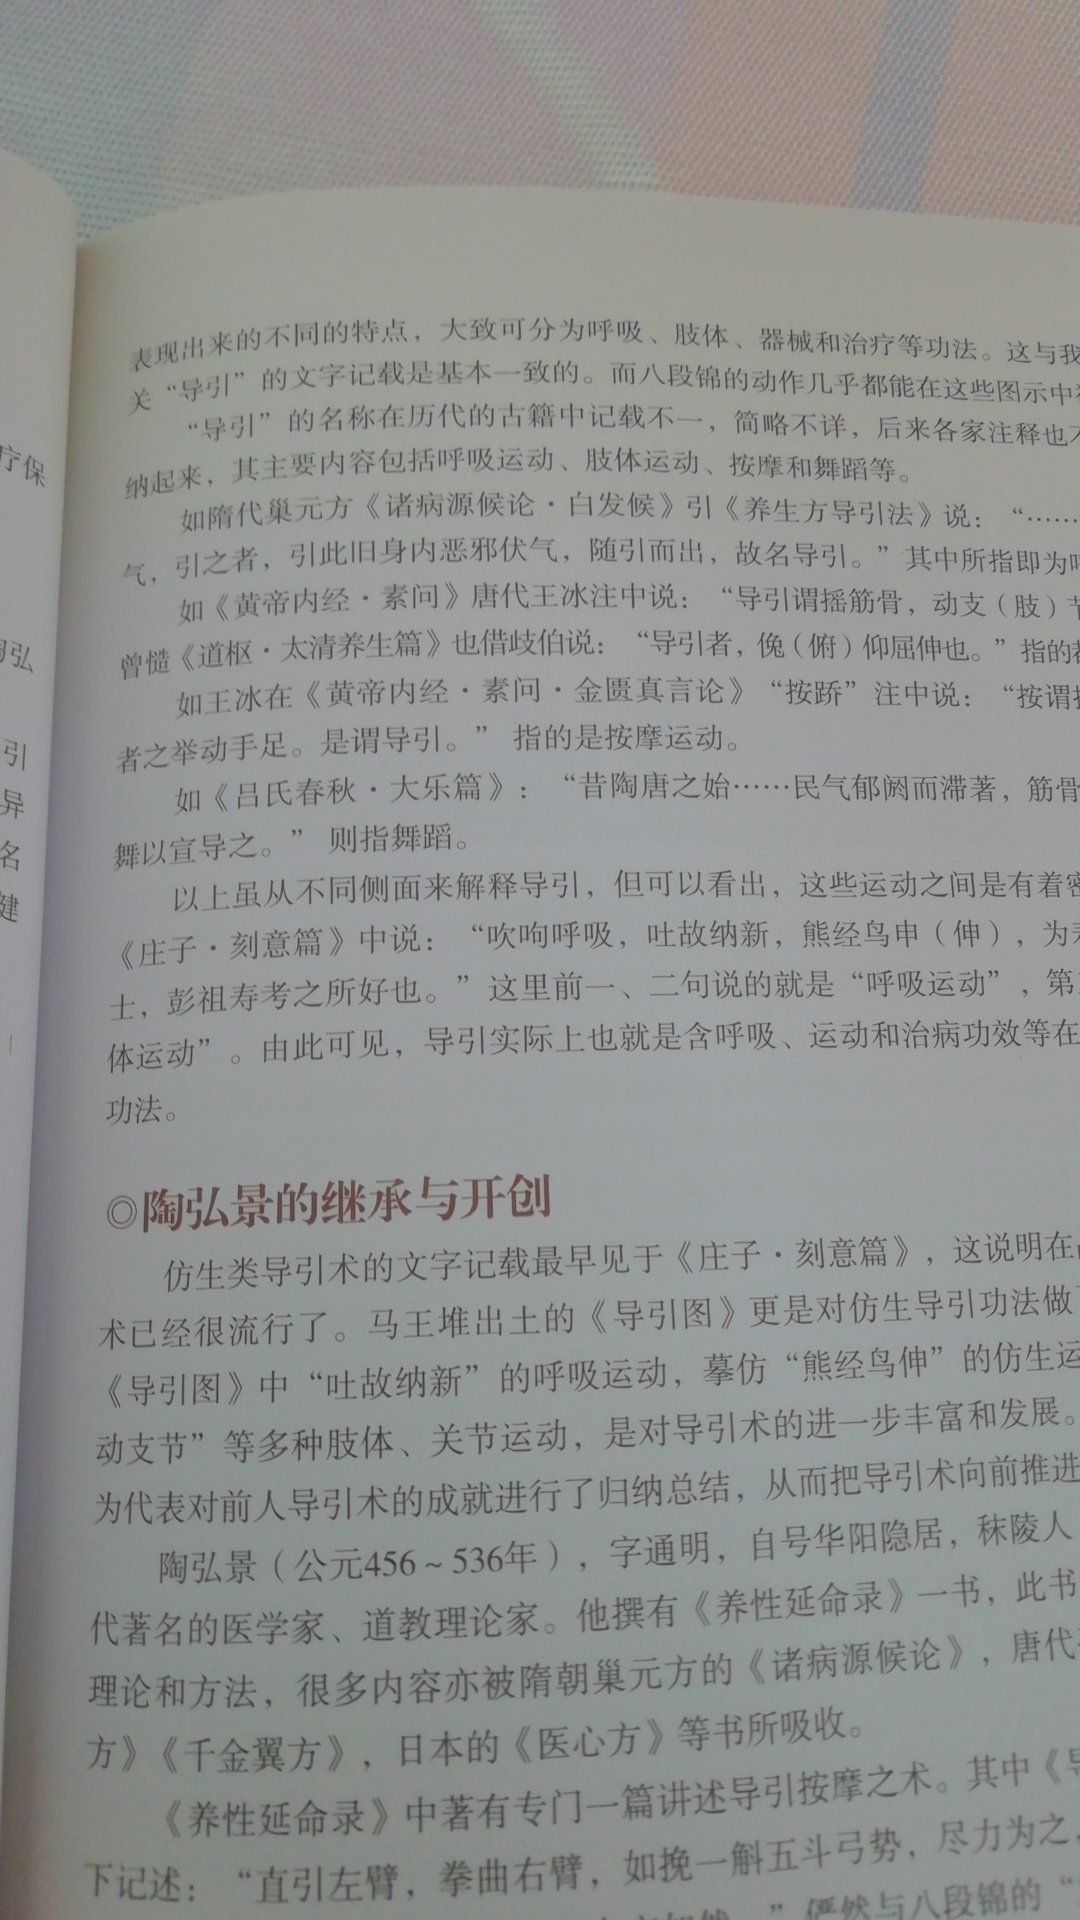 陶弘景八段锦一书讲述了中华导引术八段锦的来源及发展，全书图文并茂，易学易用，值得一看。